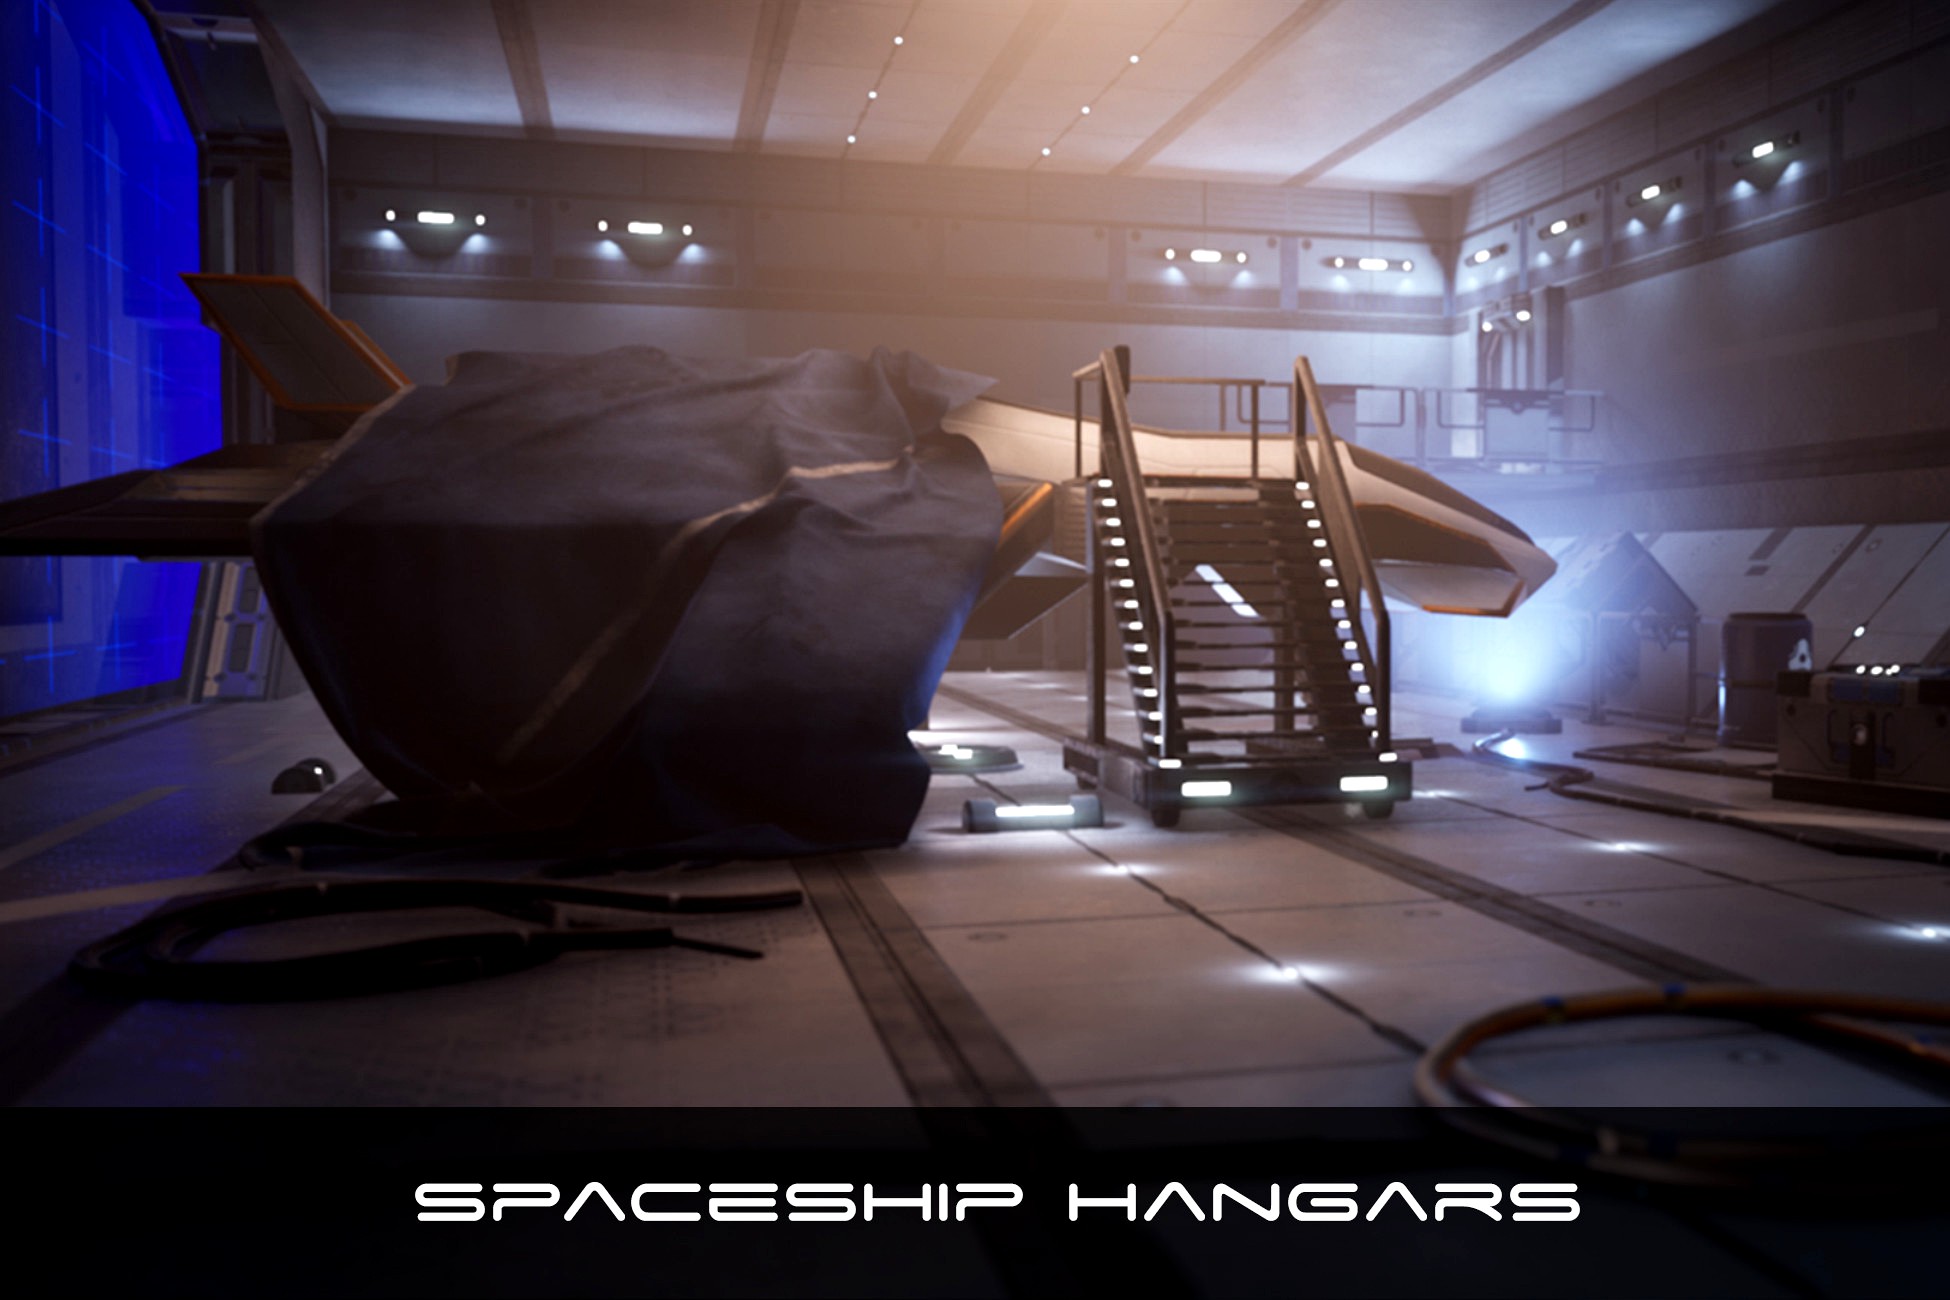 Modular Sci-Fi Environment Kit-bash (Spaceship hangars)